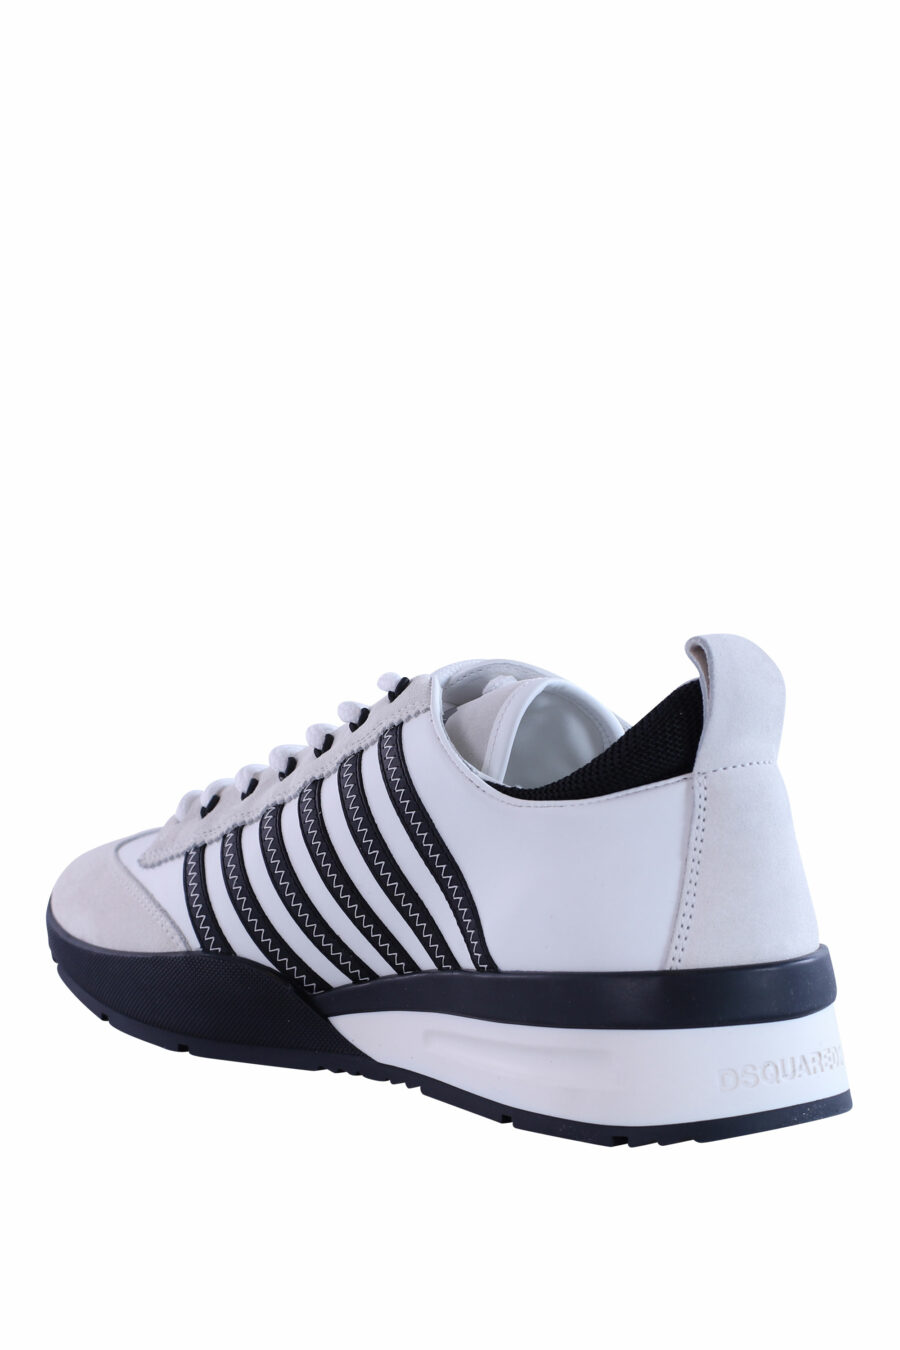 Zapatillas blancas y negras con lineas azules - IMG 2963